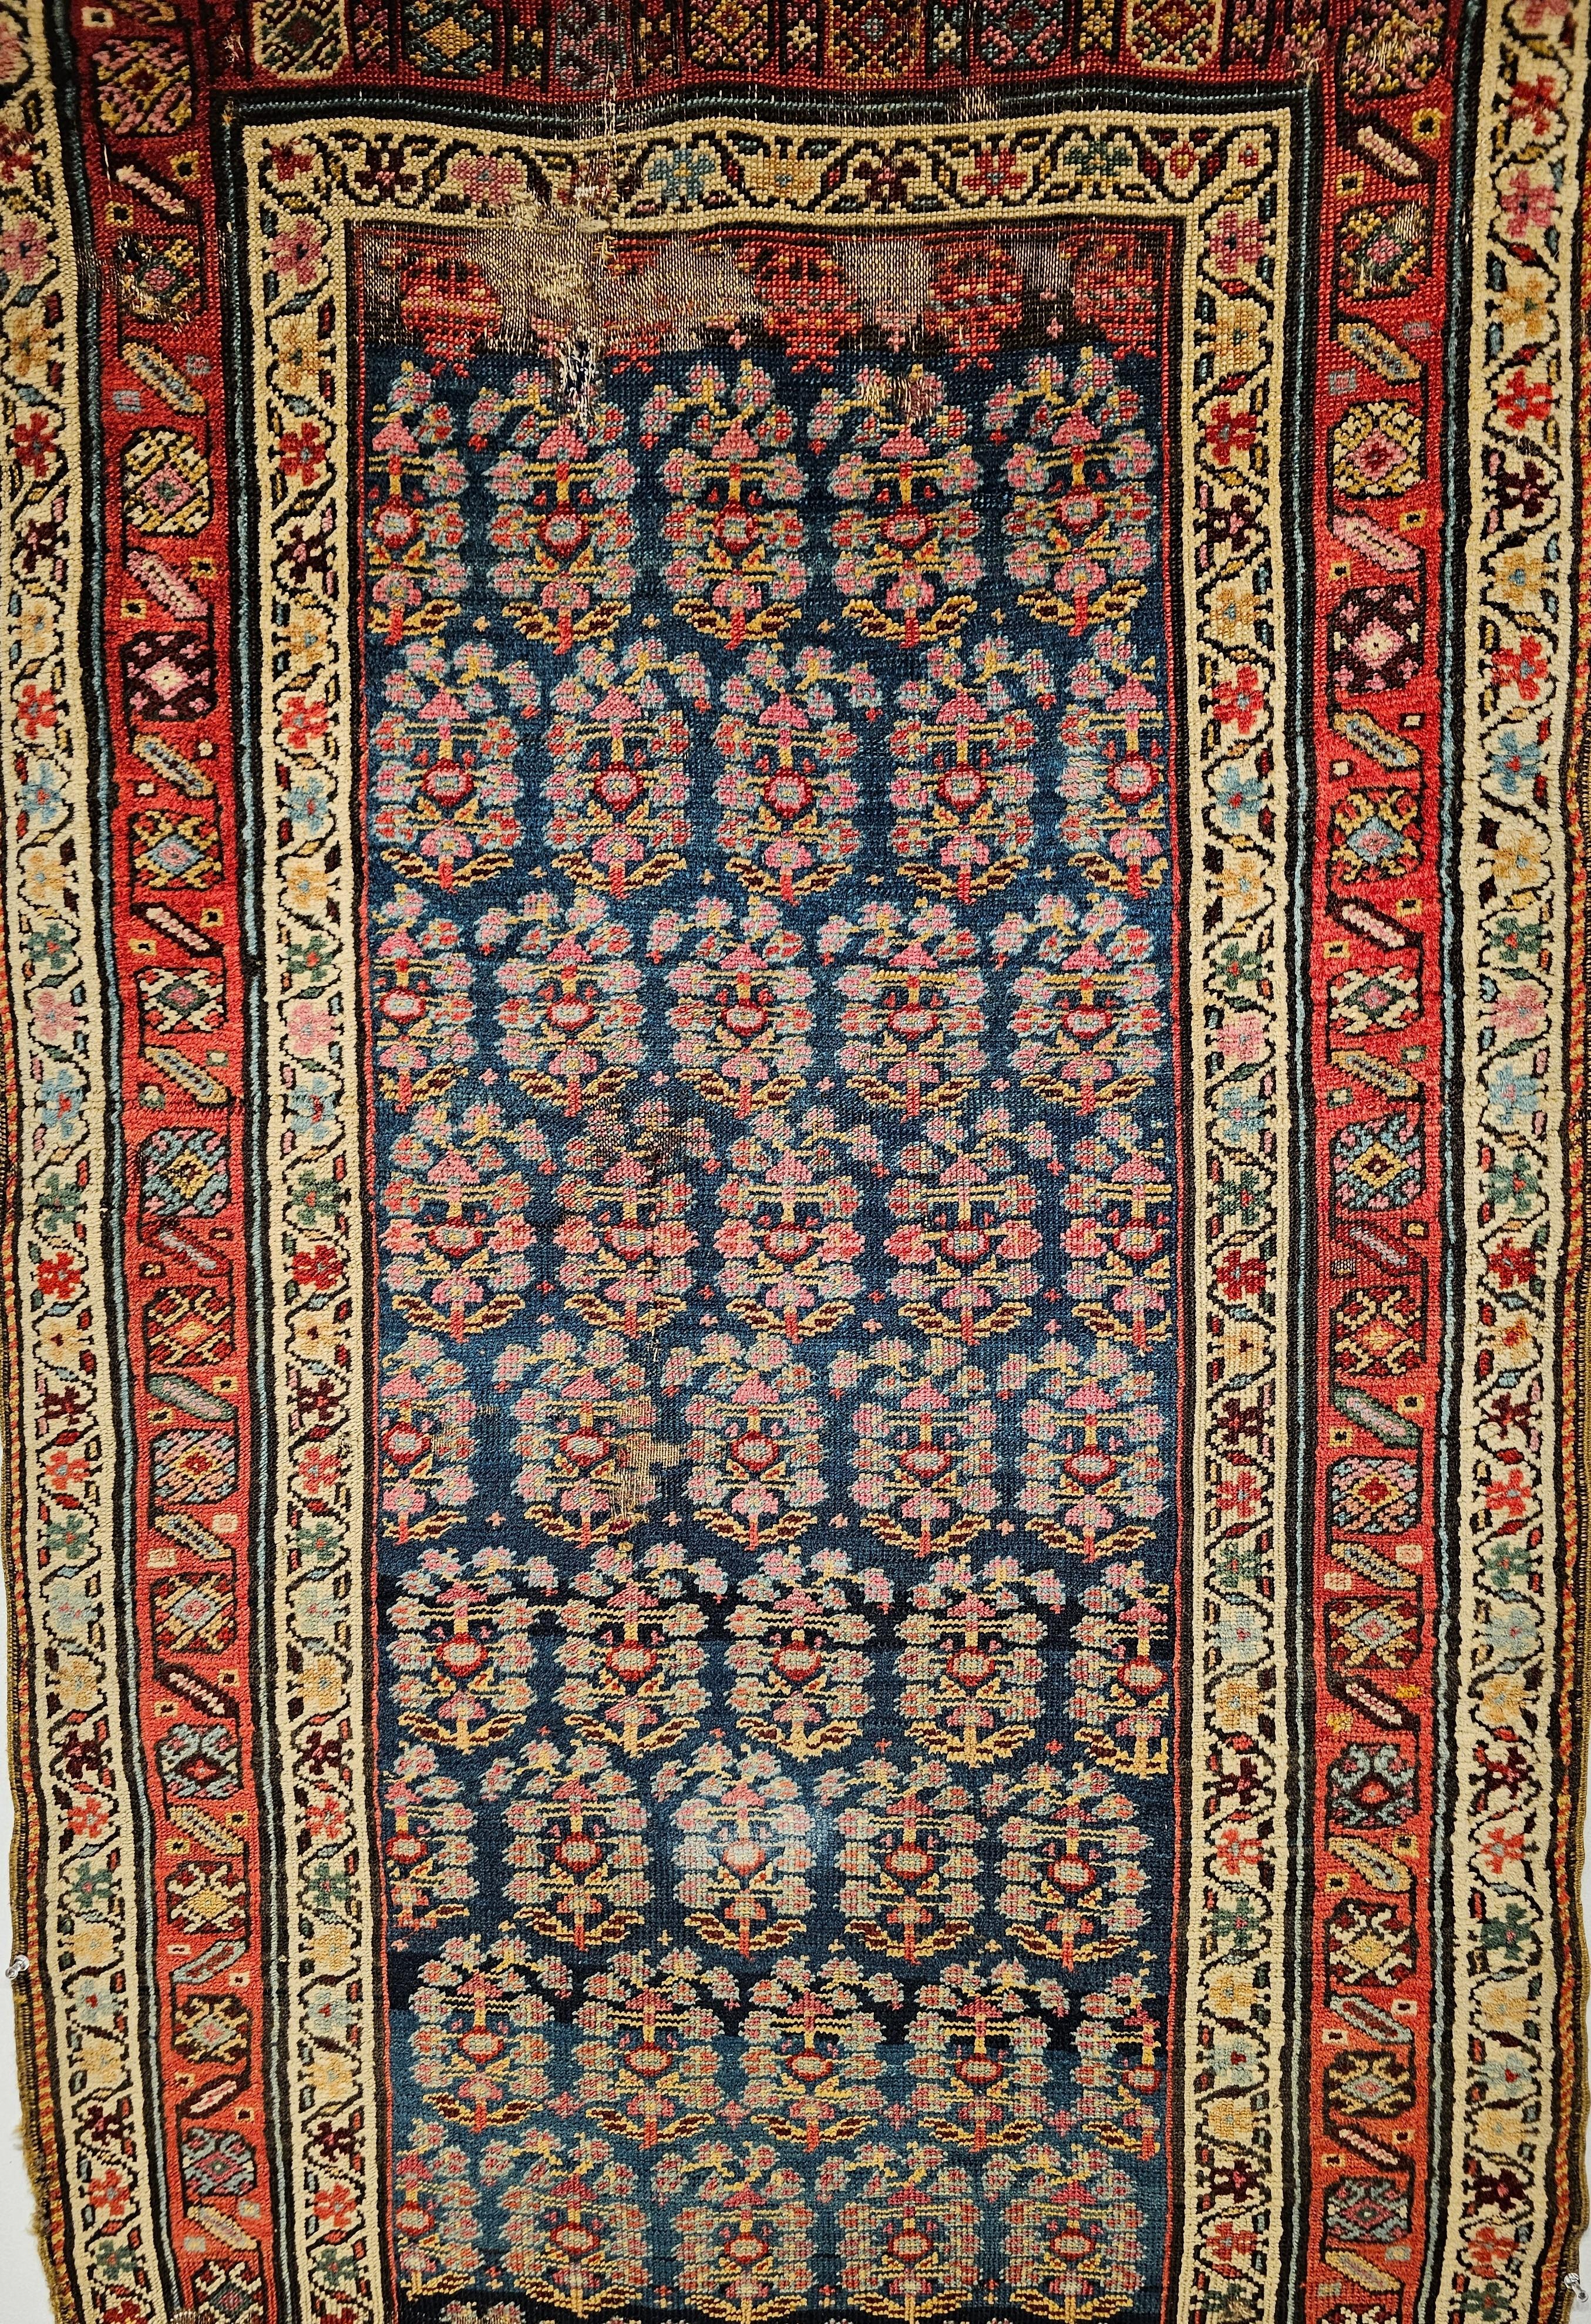 A 19th century hand woven Persian Bidjar runner has an allover pattern of  